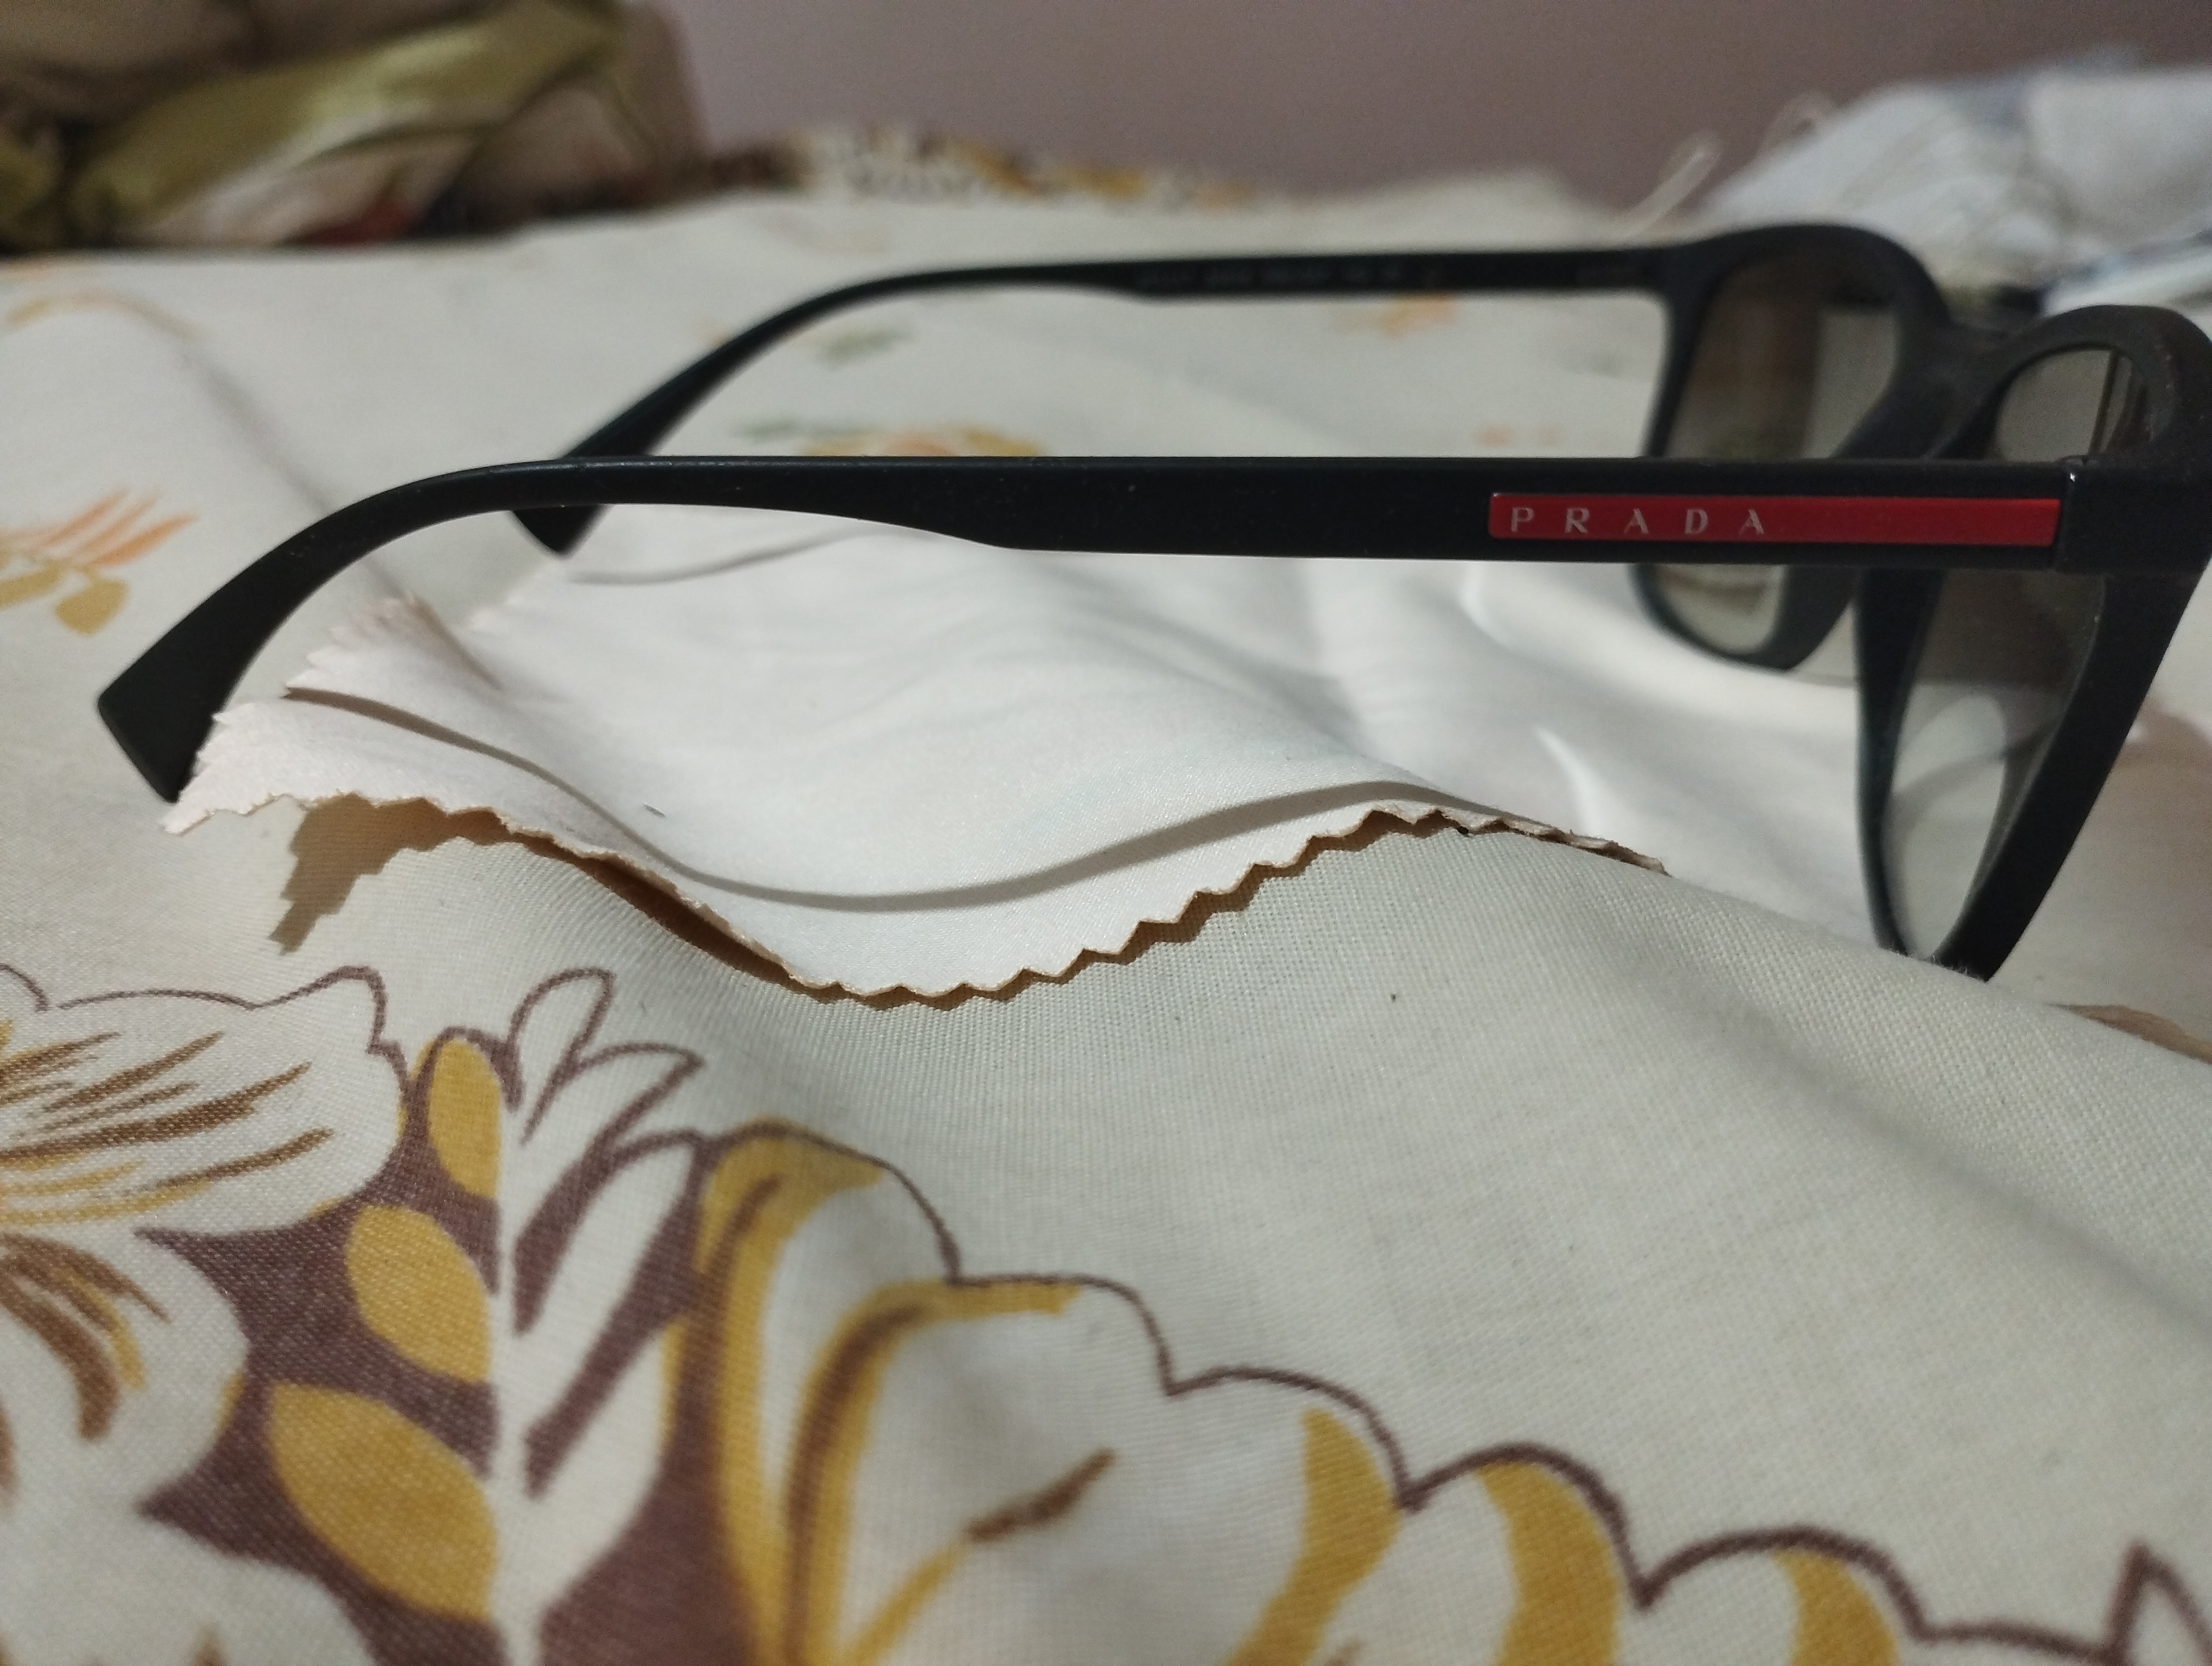 תמונה 3 ,משקפי שמש פראדה למכירה באביחיל משקפיים  משקפי מעצבים